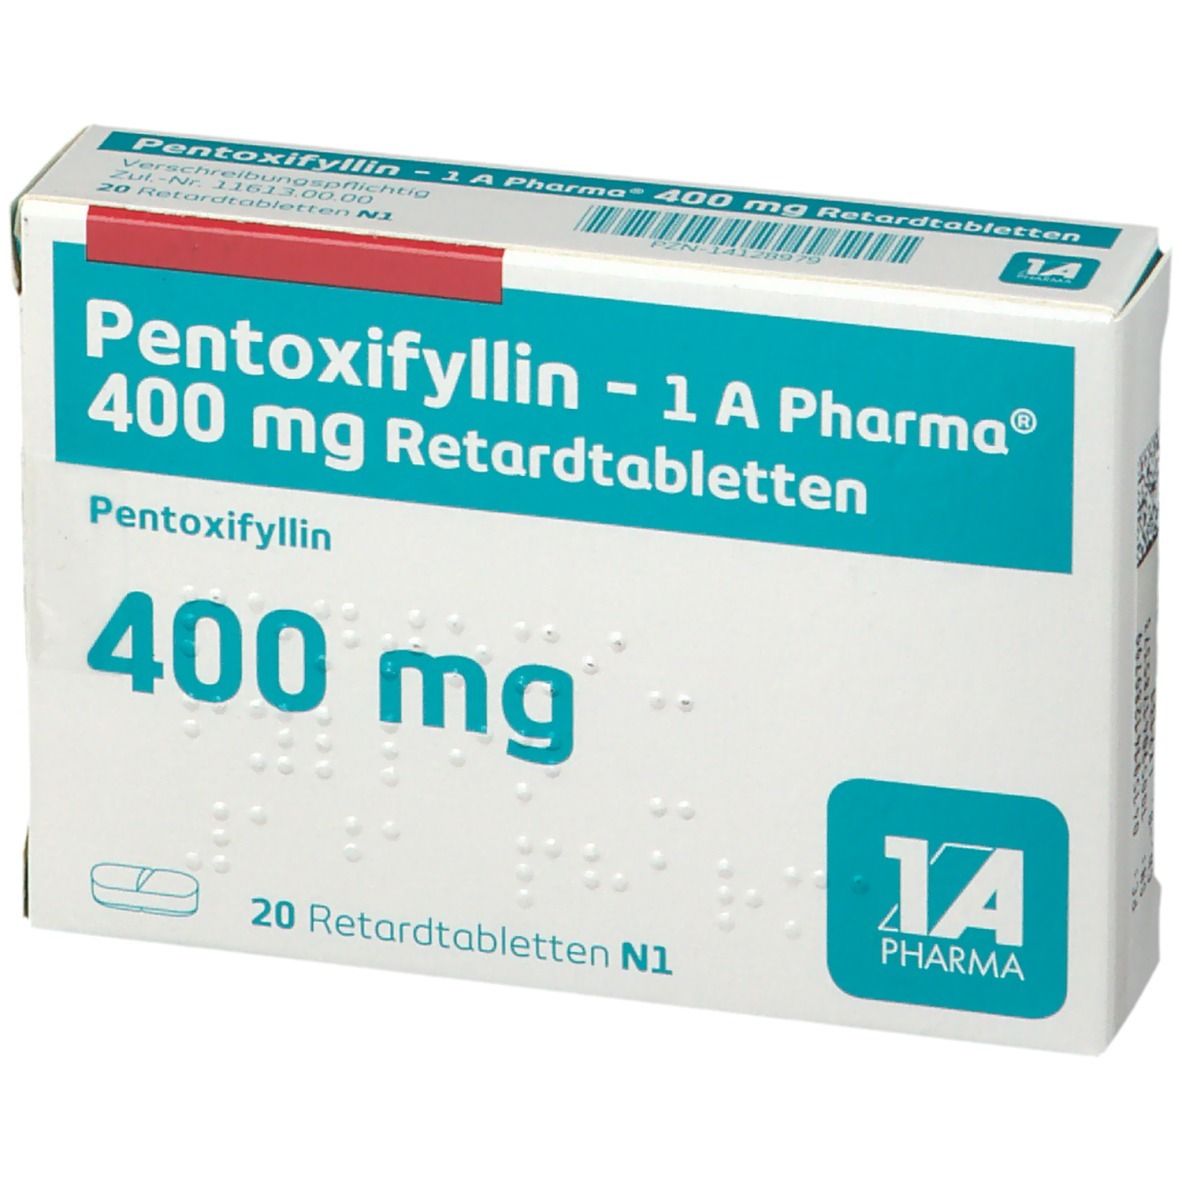 Pentoxifyllin - 1 A Pharma® 400 mg